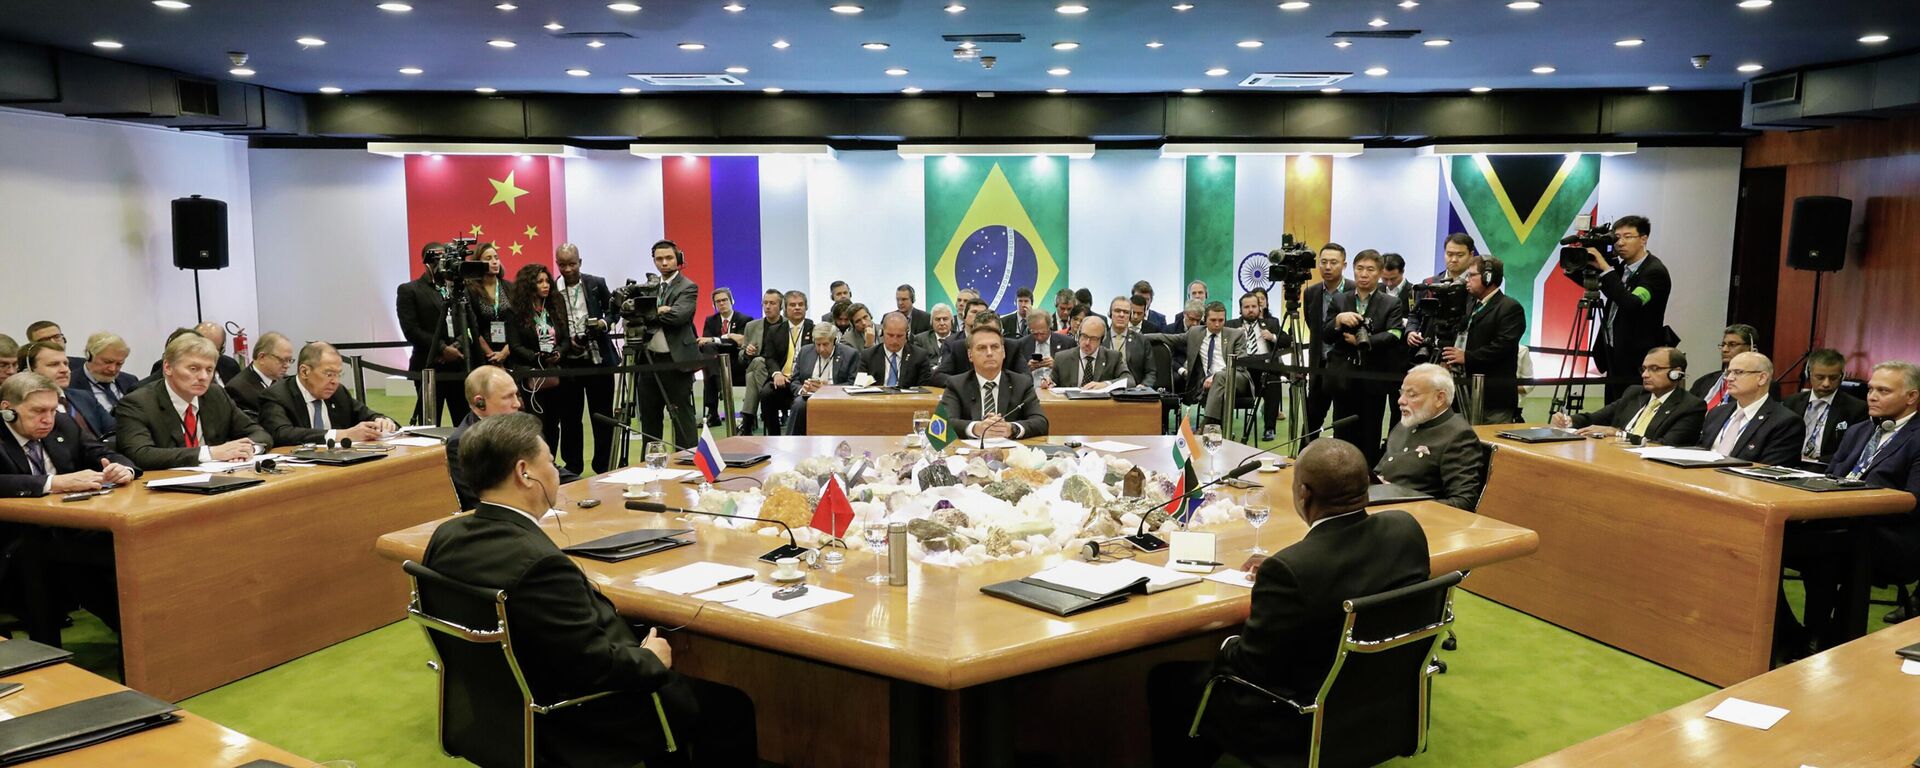 Sessão Plenária da XI Cúpula de Líderes do BRICS, em Brasília, em novembro de 2019 (foto de arquivo) - Sputnik Brasil, 1920, 04.11.2022